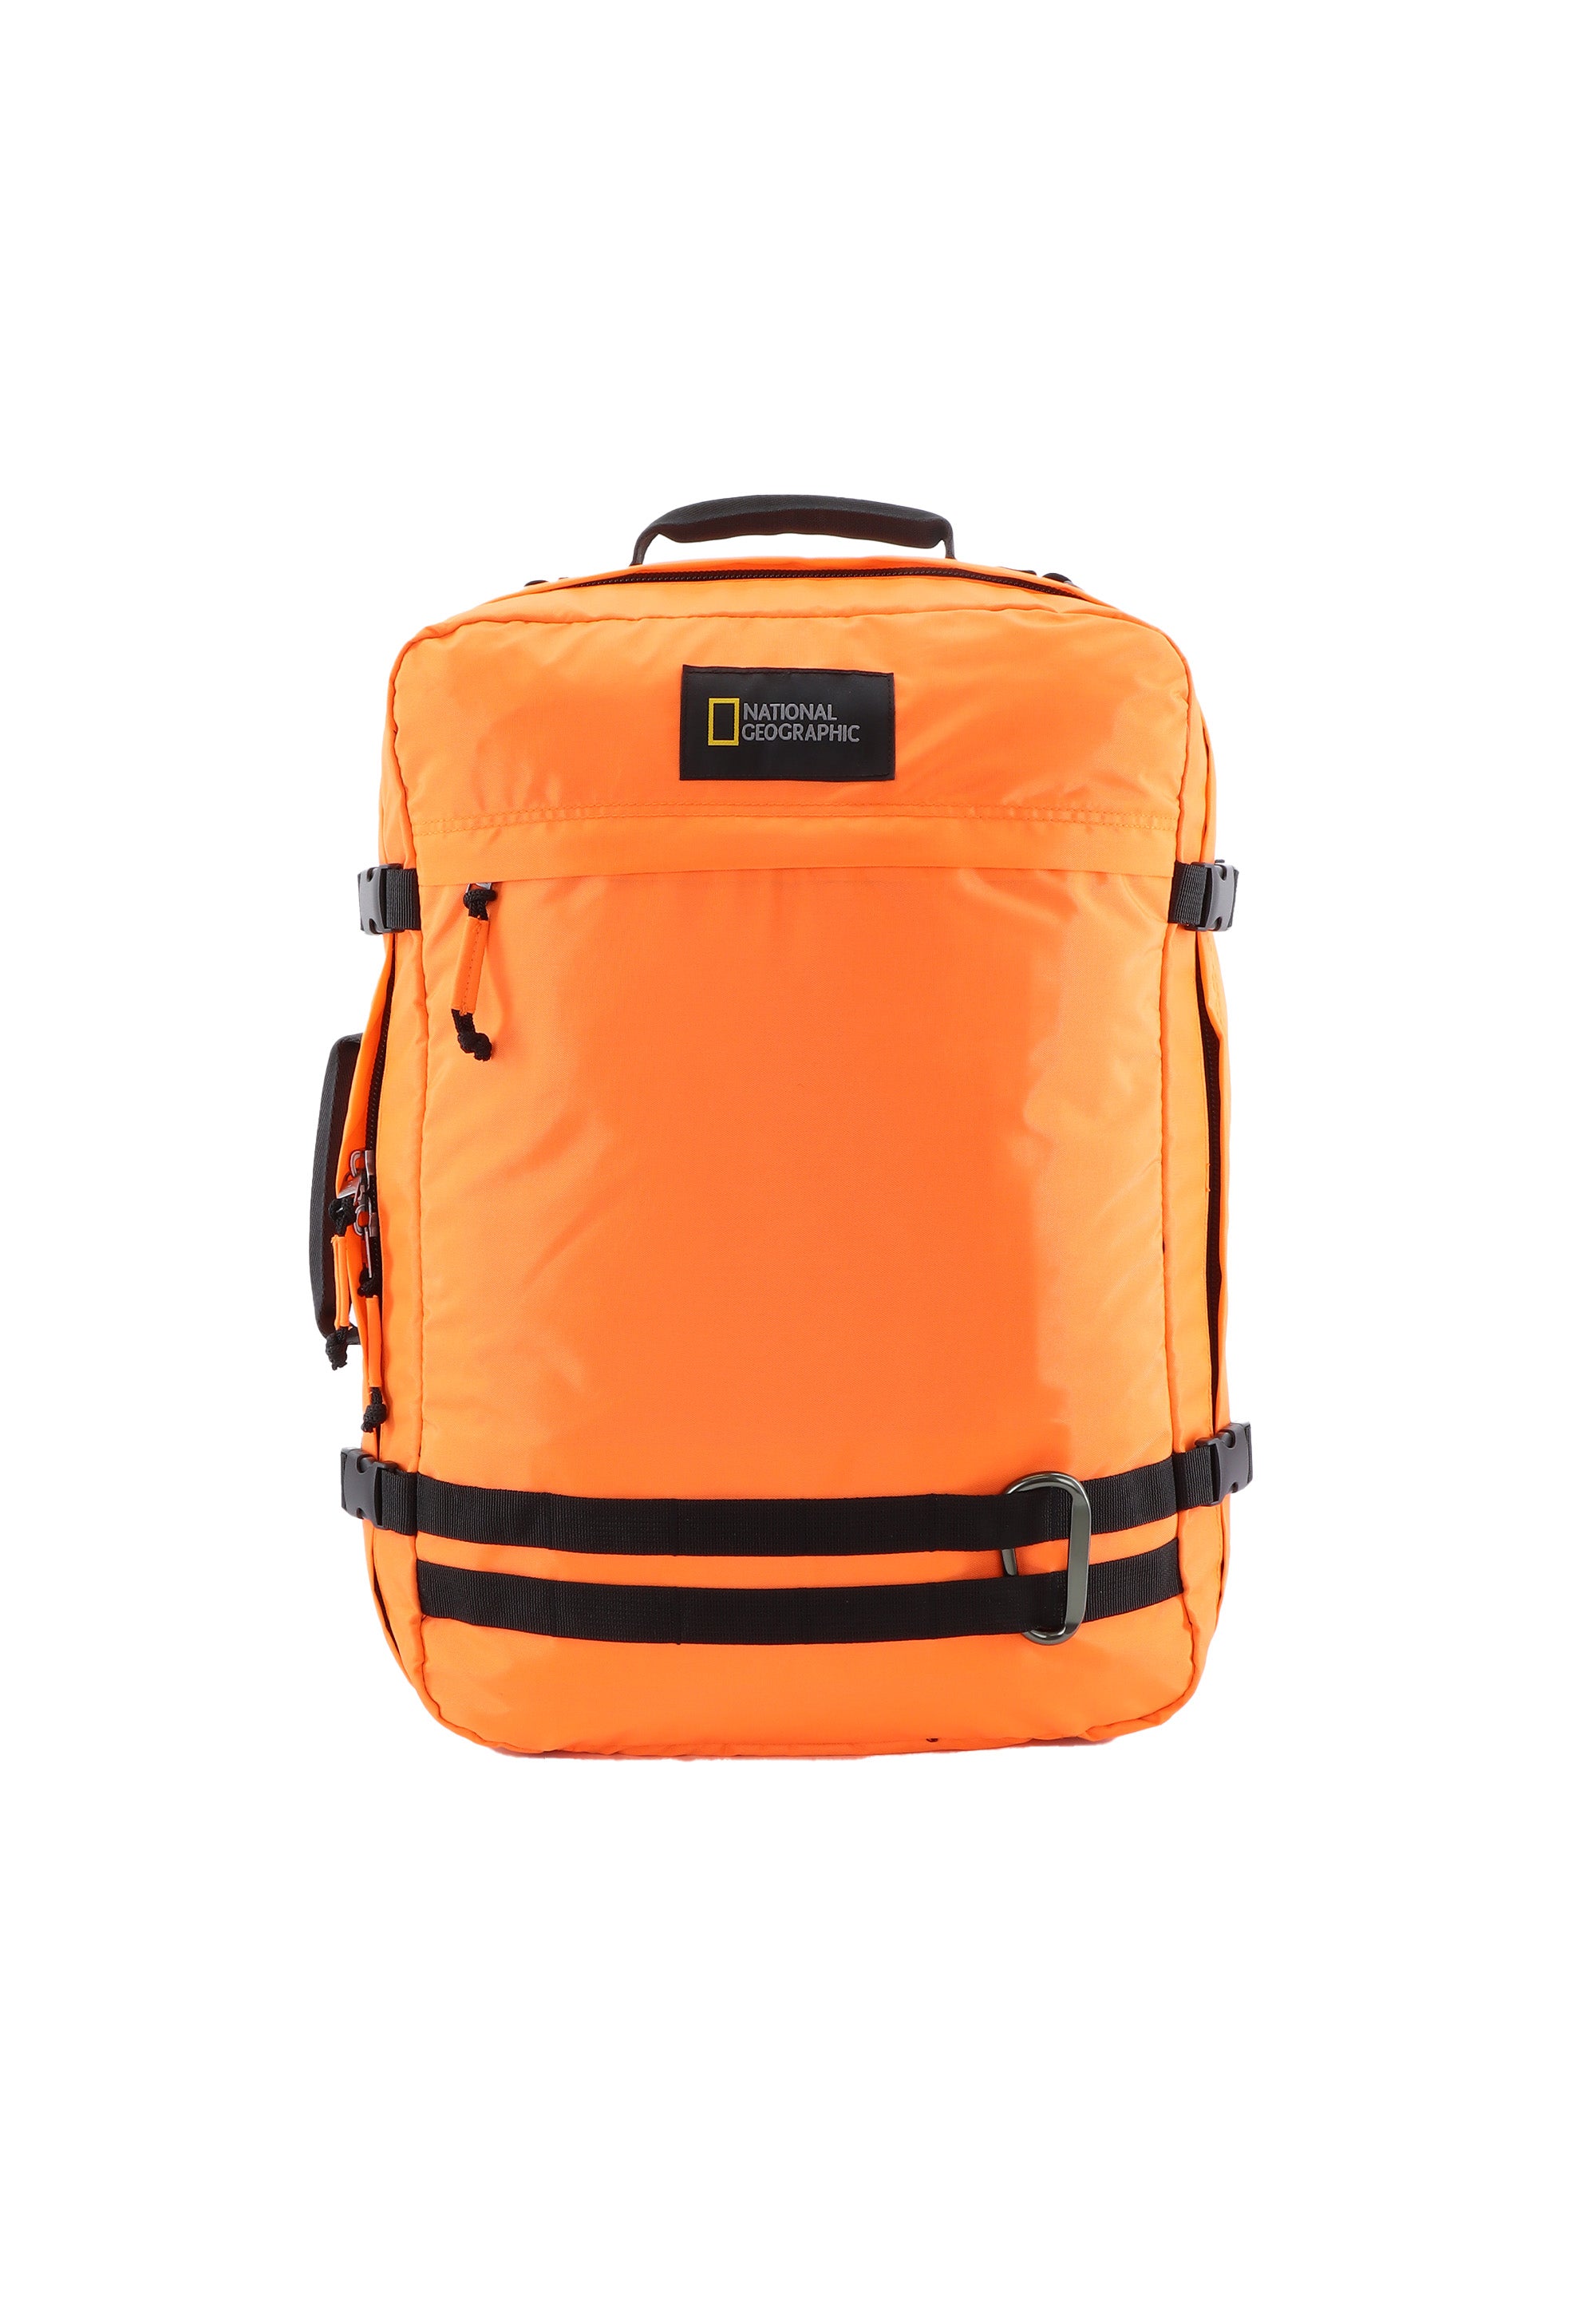 National Geographic - Hybrid Rucksack / Schultertasche / Umhängetasche / Aktentasche - 32L - Orange